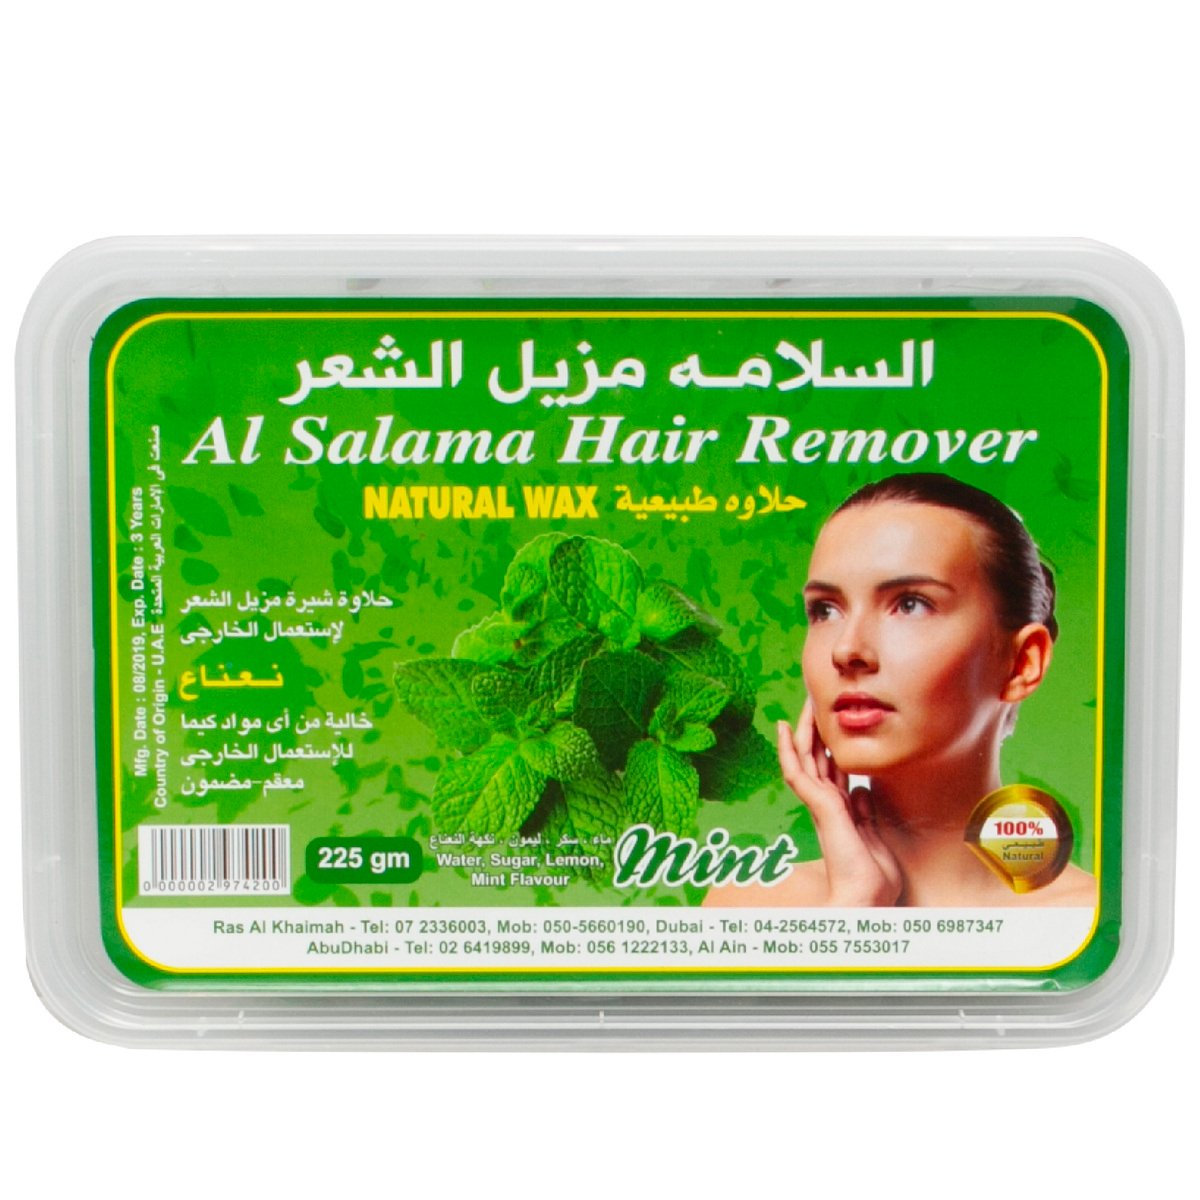 Al Shama Hair Remover Natural Wax 225 g